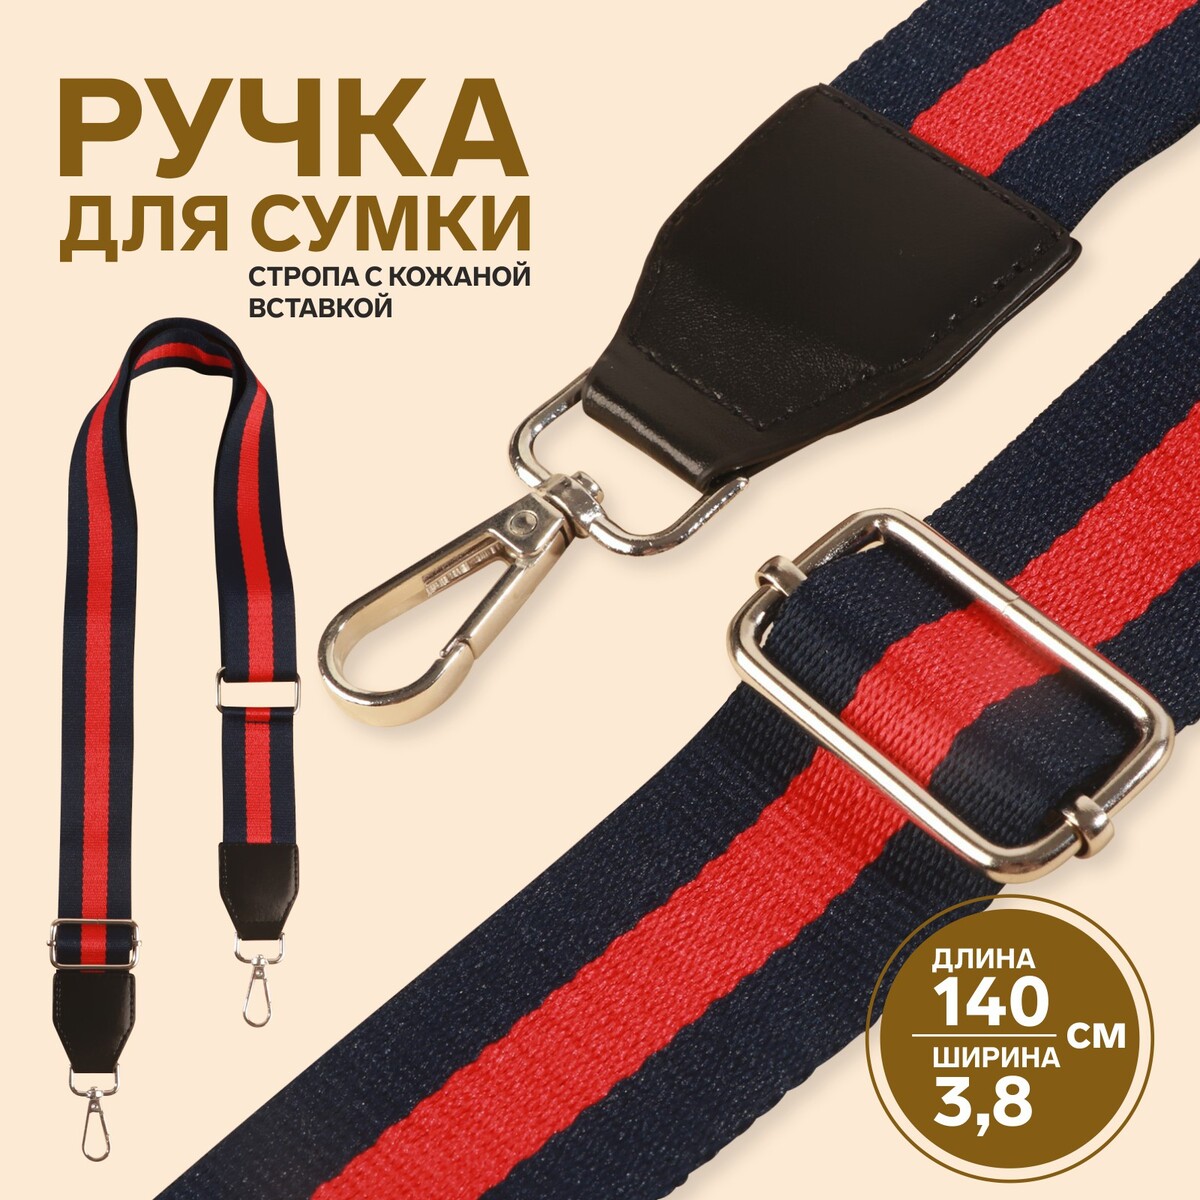 Ручка для сумки, стропа с кожаной вставкой, 139 ± 3 × 3,8 см, цвет синий/красный ручка панорама грозный красный